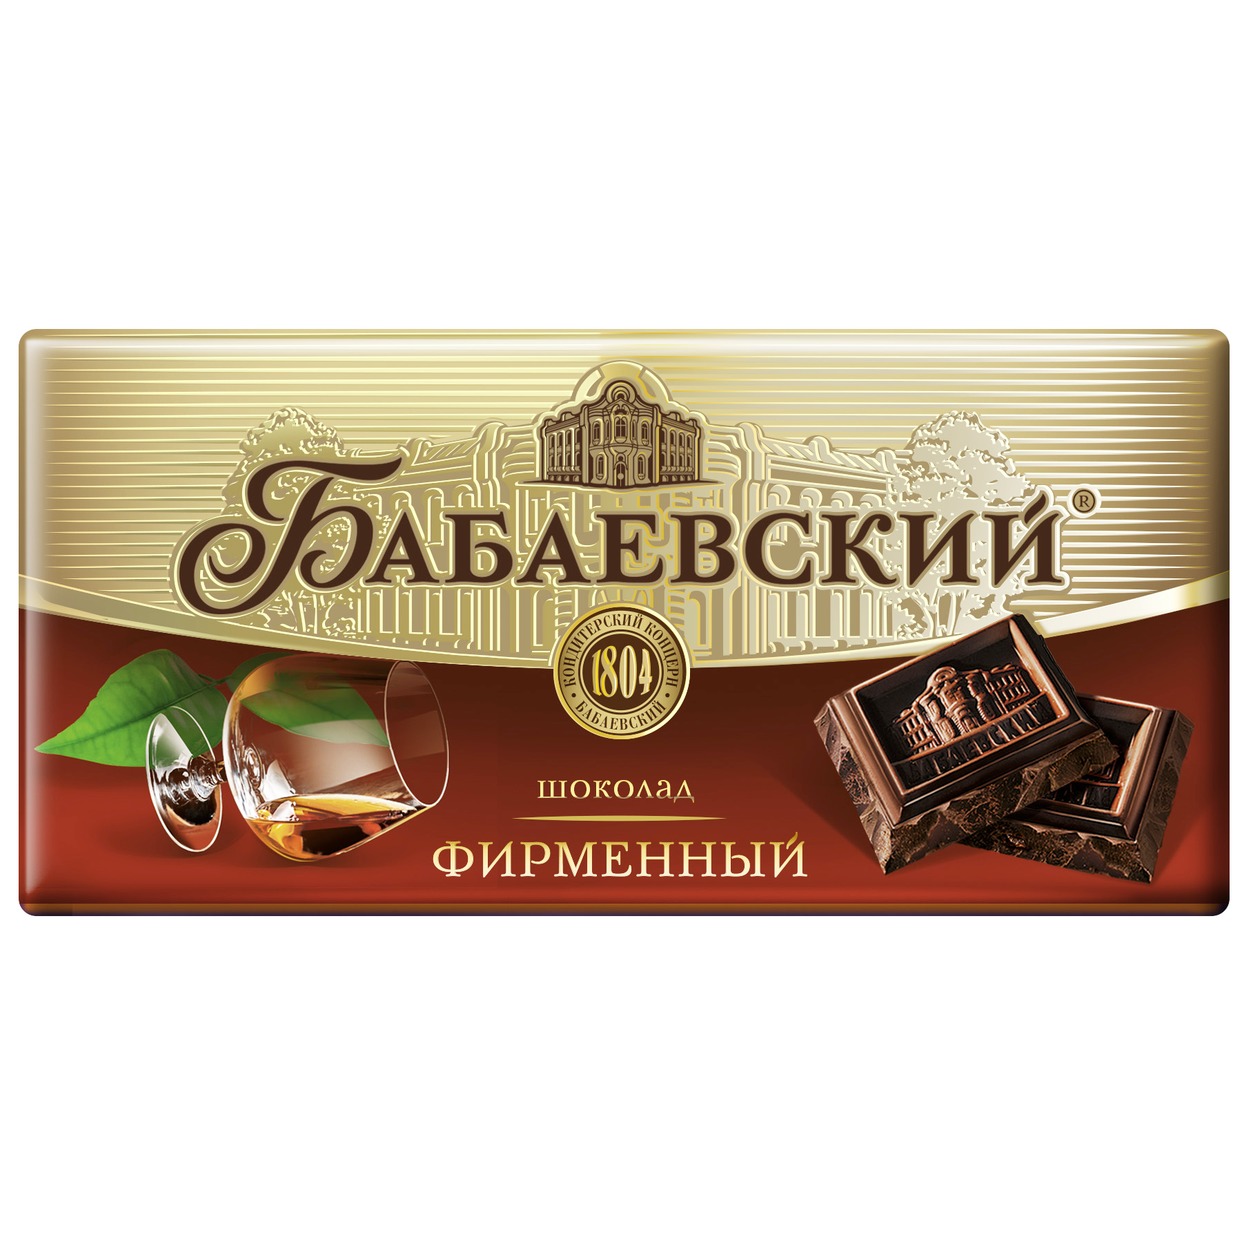 Шоколад Бабаевский фирменный 100 г по акции в Пятерочке